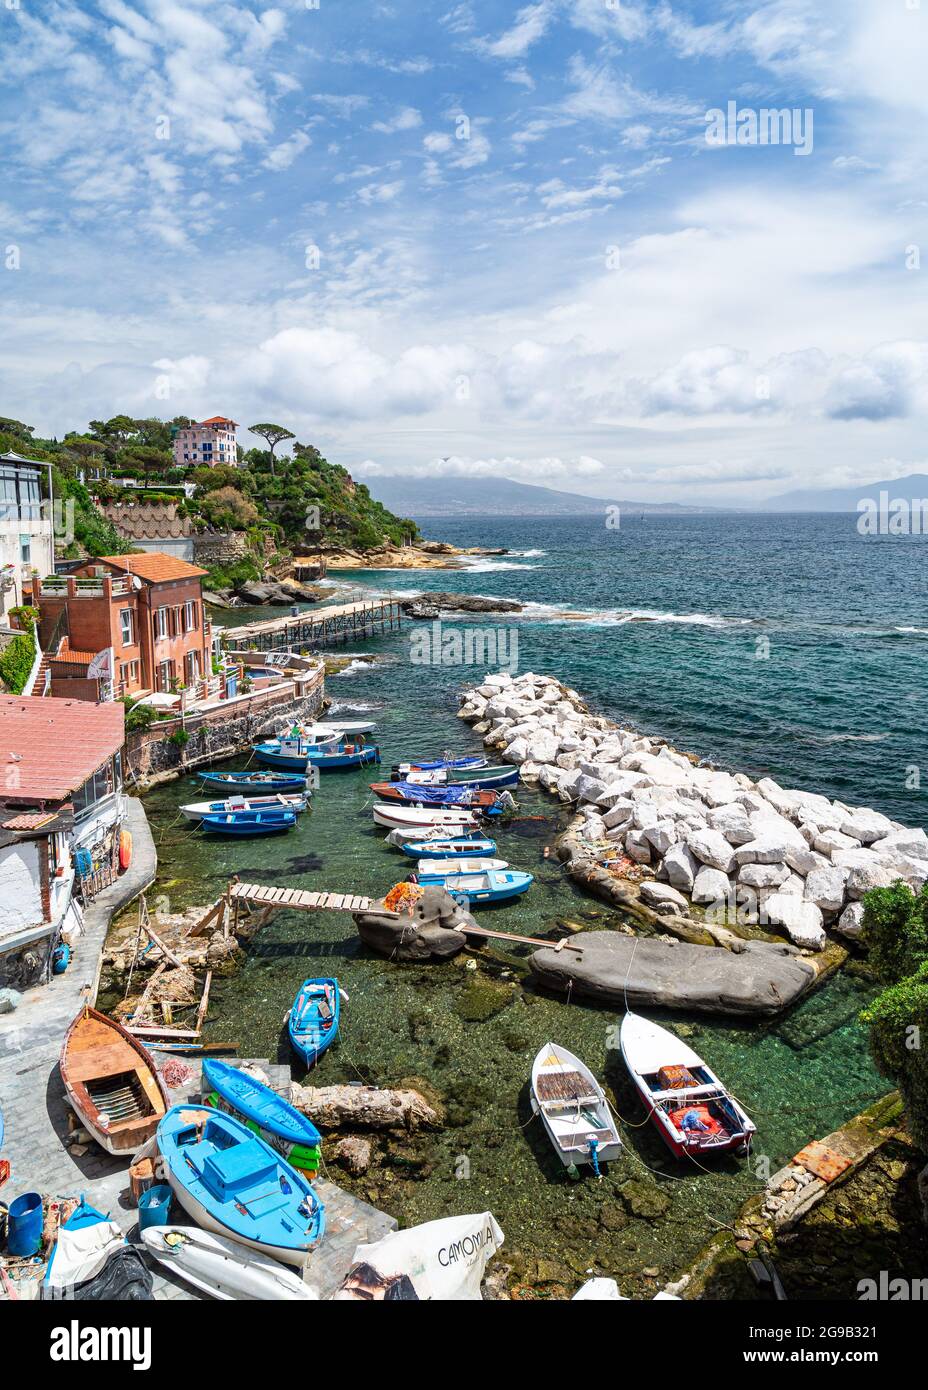 Vue sur Marechiaro, un village de pêcheurs typique situé dans le quartier de Posillipo à Naples avec une belle vue panoramique, Italie Banque D'Images